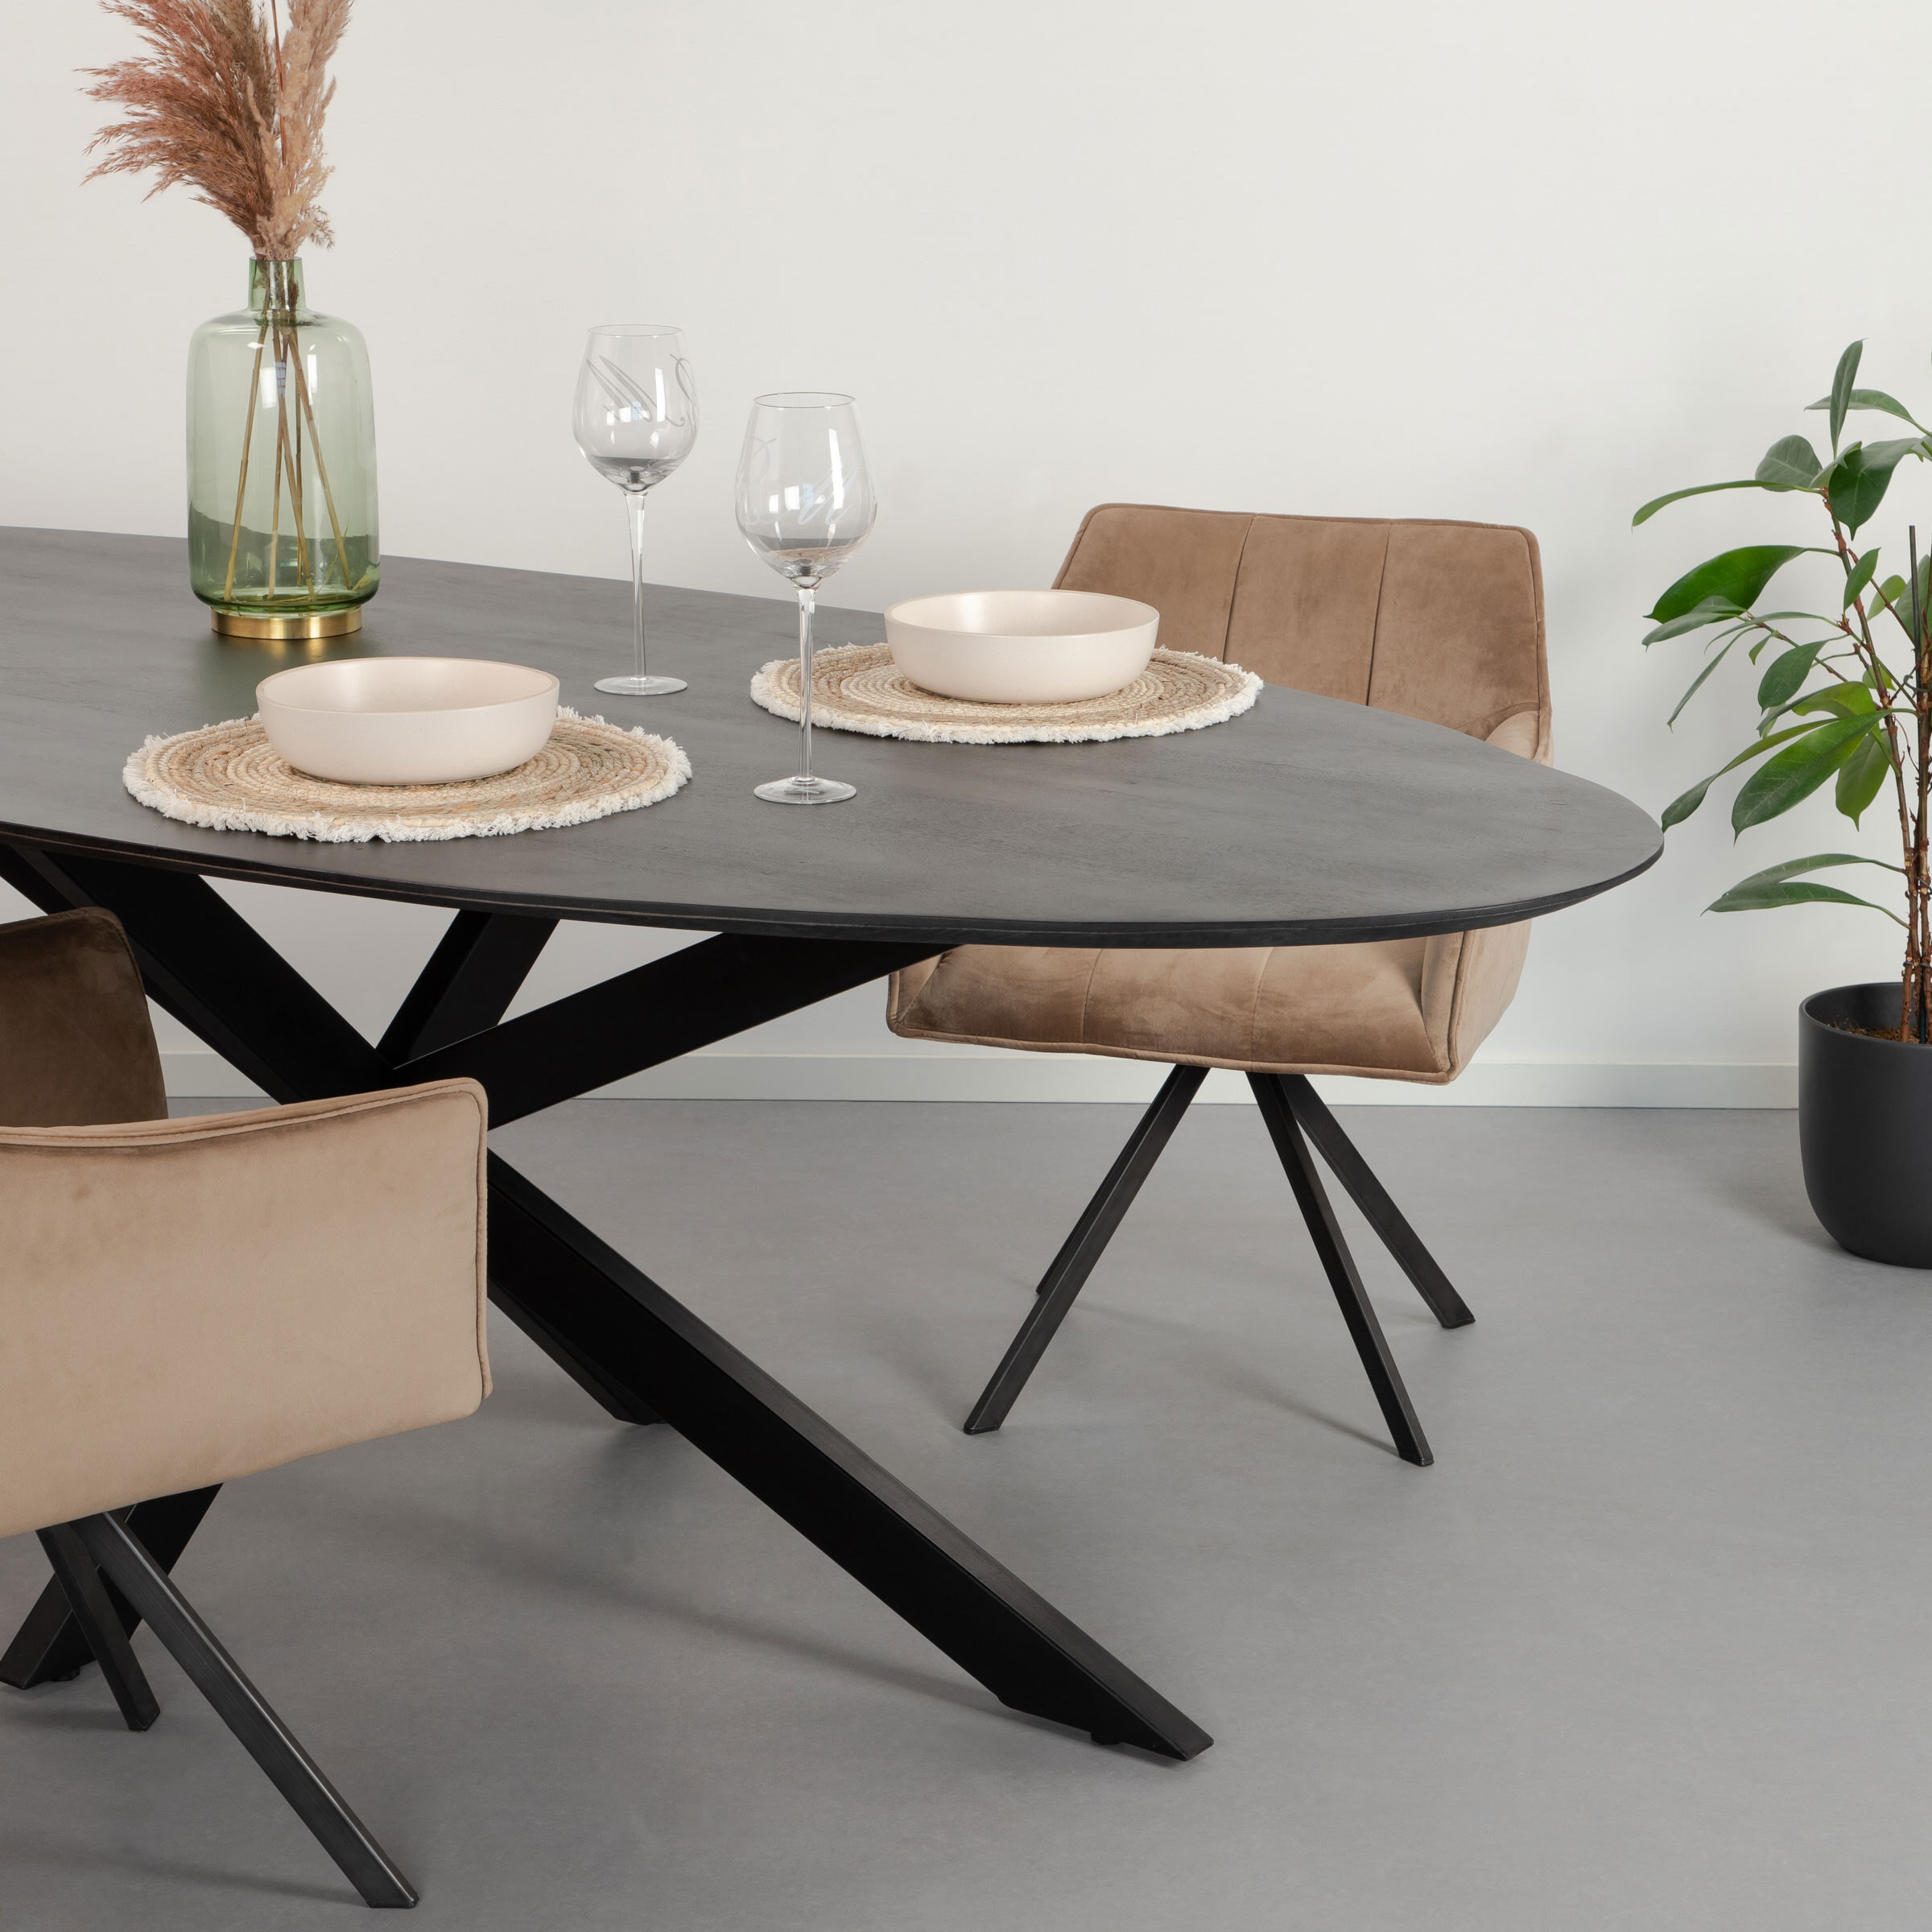 Livingfurn Ovale Eettafel Oslo Mangohout en staal - Zwart - Ovaal